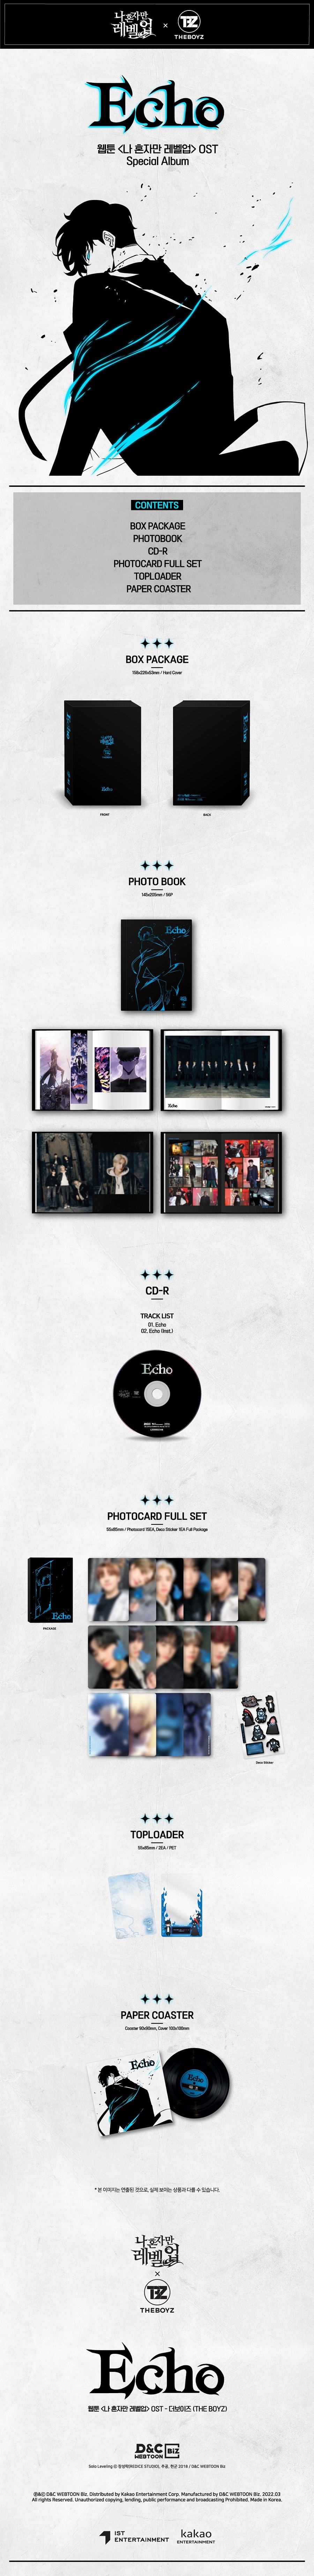 THE BOYZ - 웹툰 '나 혼자만 레벨업' OST Echo